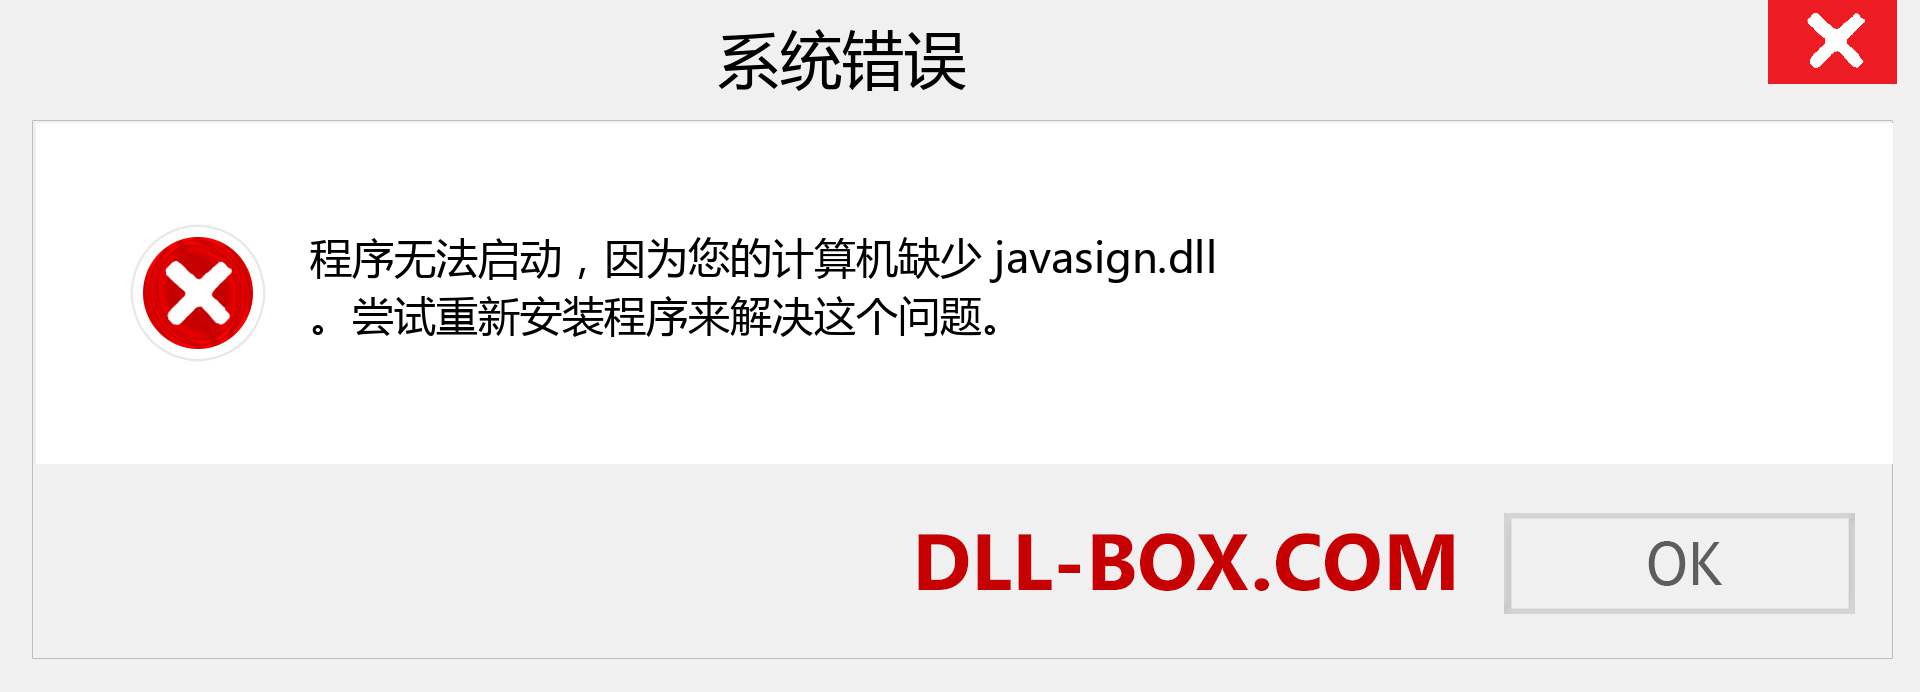 javasign.dll 文件丢失？。 适用于 Windows 7、8、10 的下载 - 修复 Windows、照片、图像上的 javasign dll 丢失错误